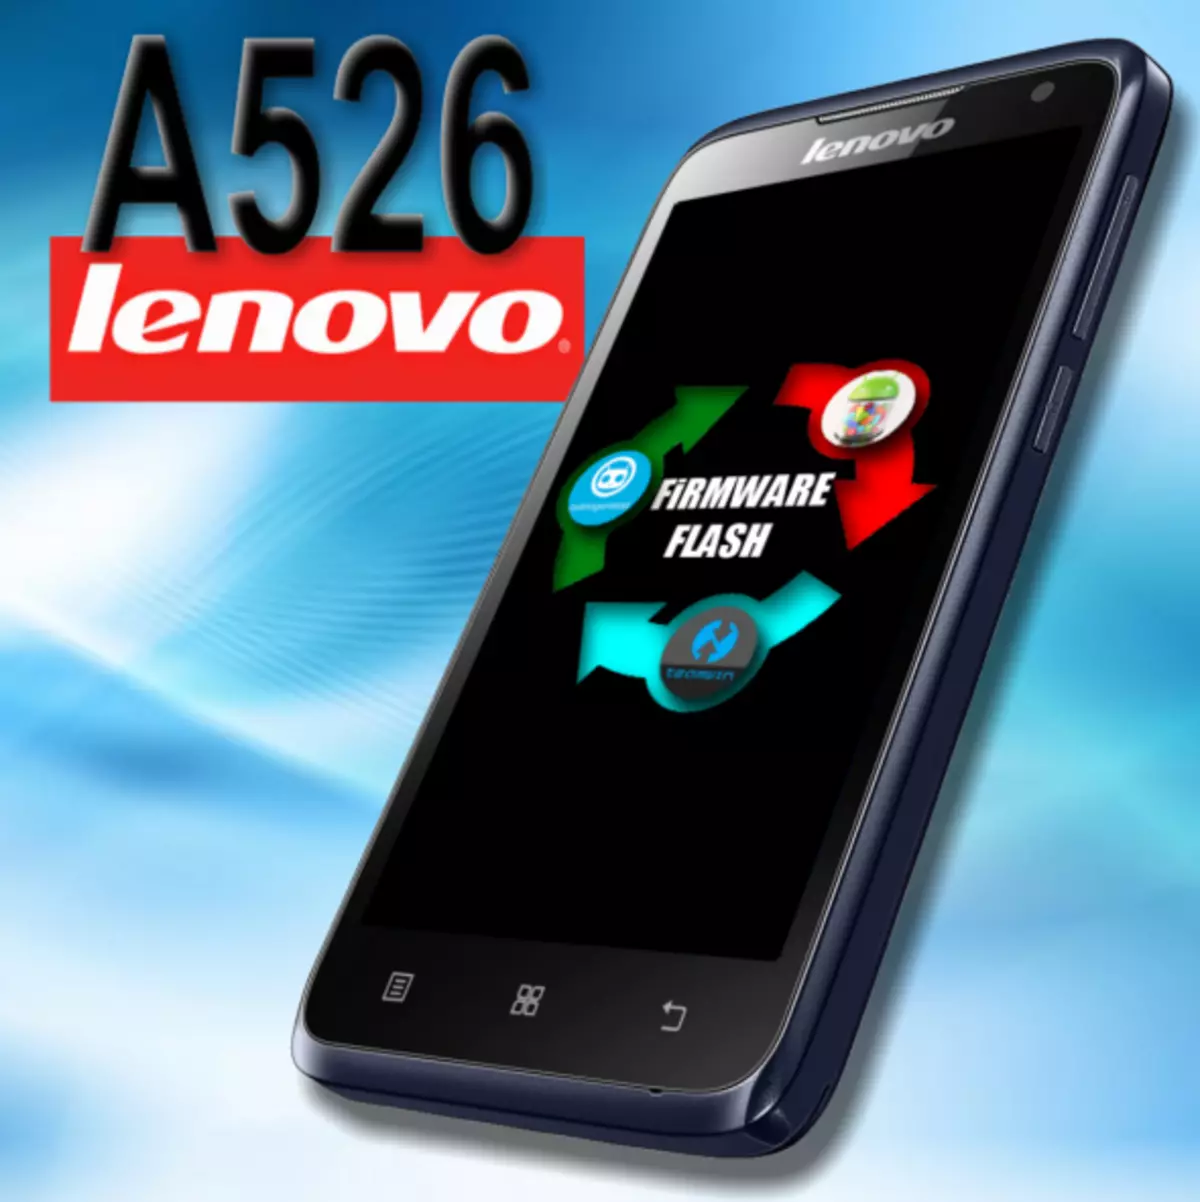 Firmware Lenovo A526